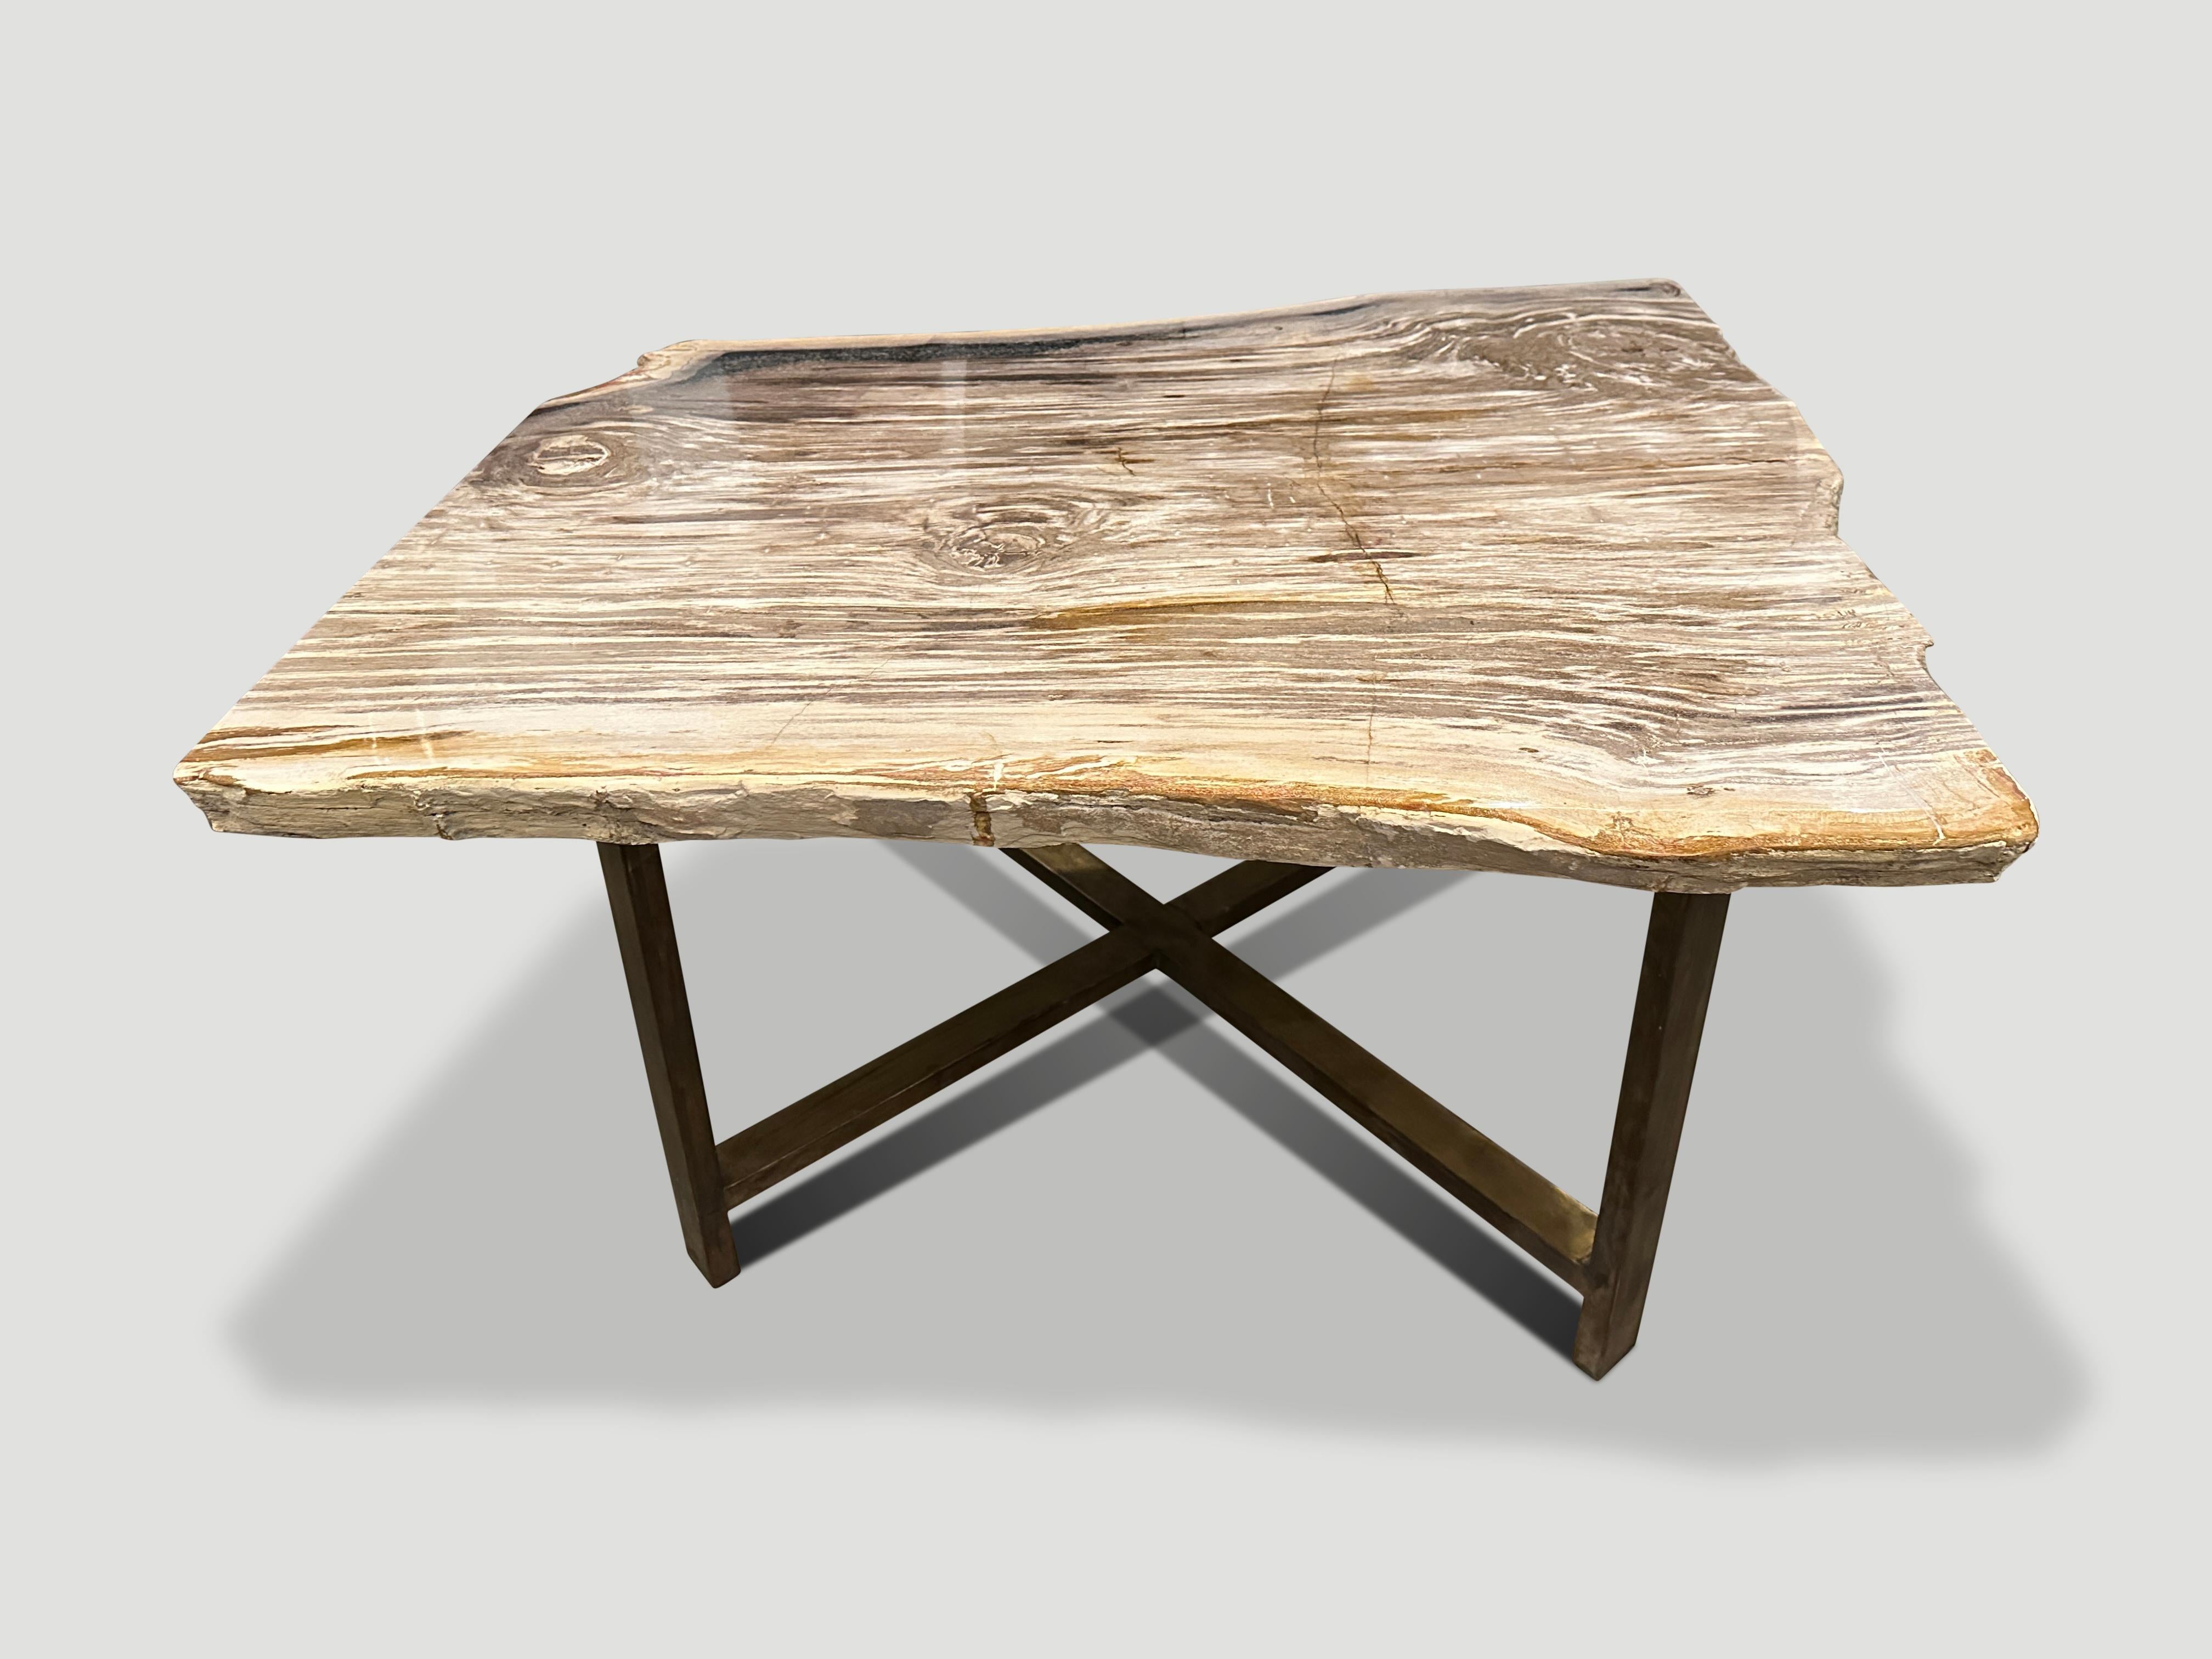 Impressionnante table basse en bois pétrifié, reposant sur une base en bronze. Il est fascinant de voir comment Mère Nature produit ces stupéfiants troncs de teck pétrifiés vieux de 40 millions d'années, aux couleurs si contrastées et aux motifs si